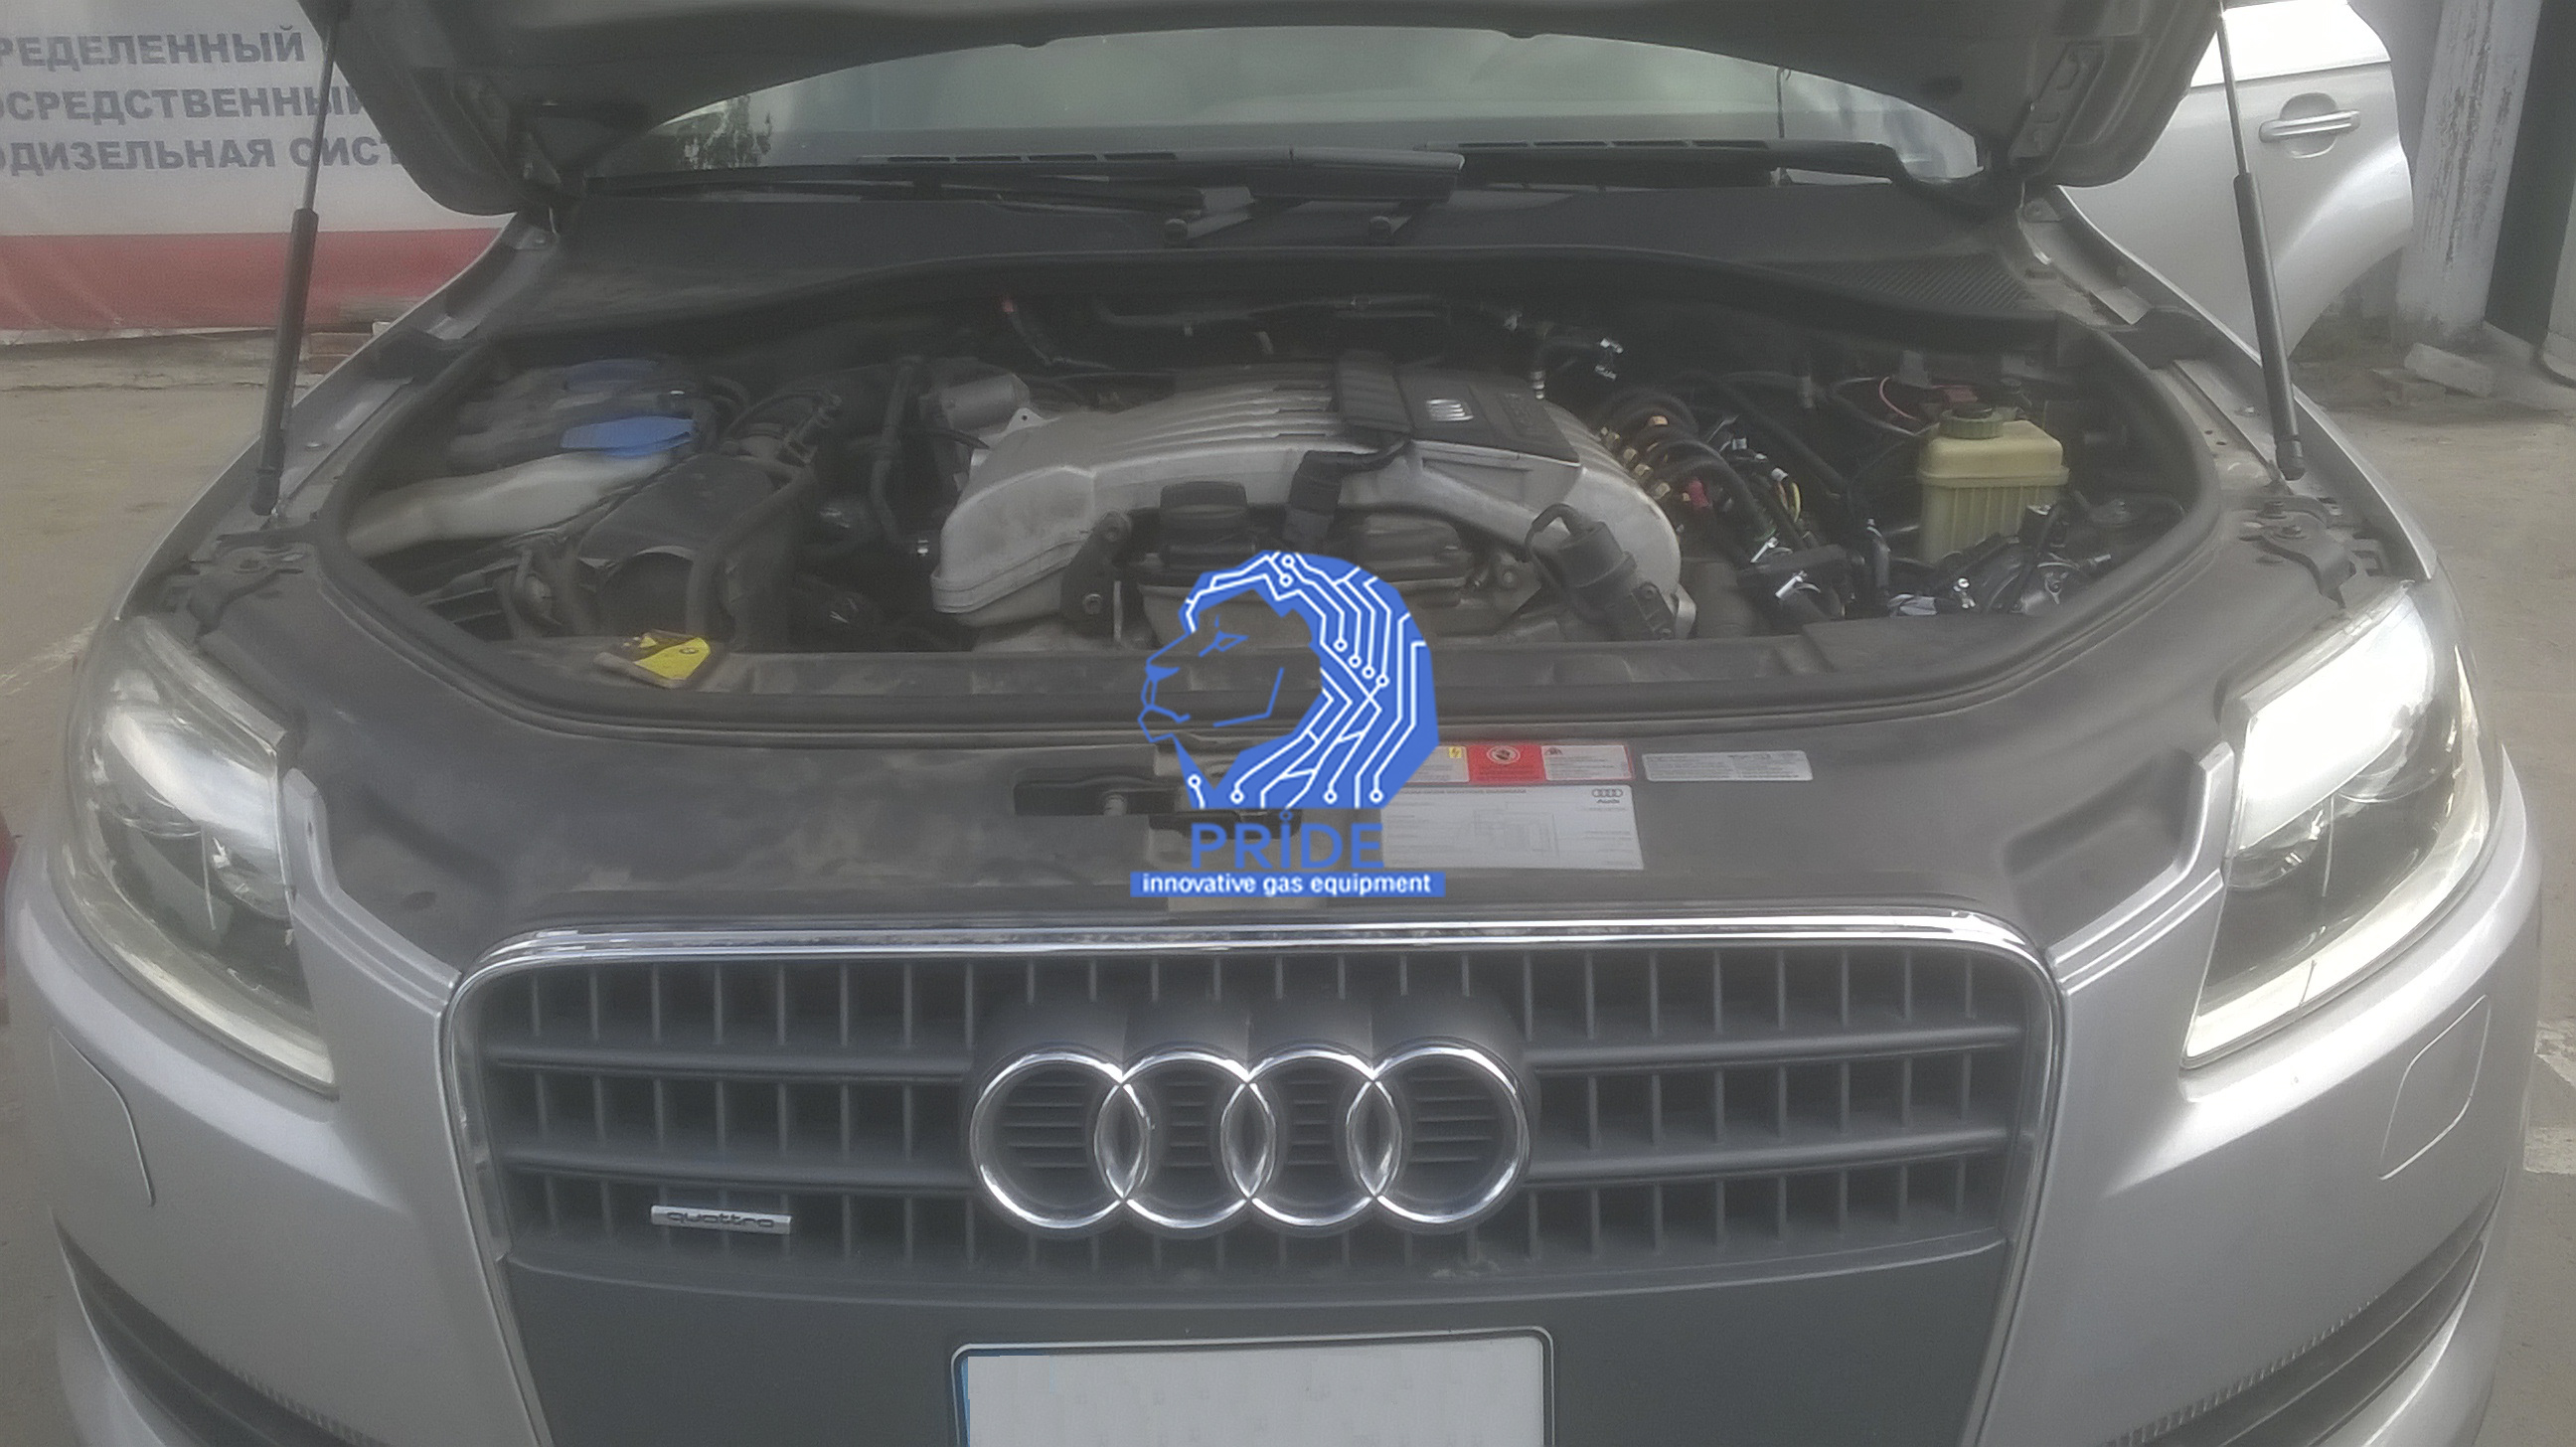 Двигатель автомобиля Audi Q7 после установки ГБО